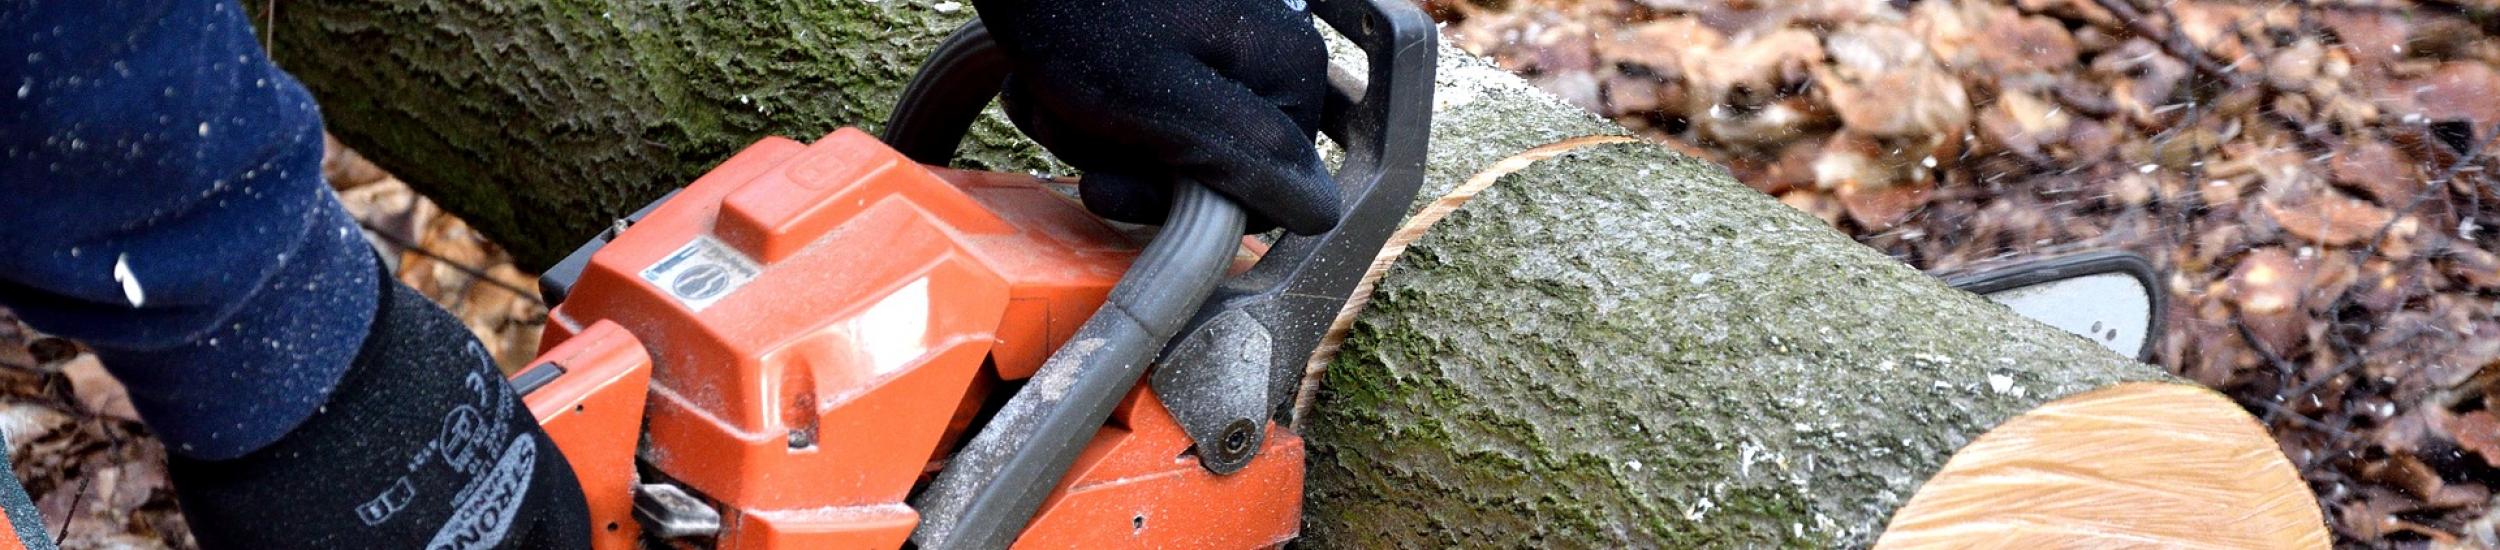 News: Taglio alberi a bordo strada, senso unico alternato giovedì 8 sulla sp 6 di isoverde